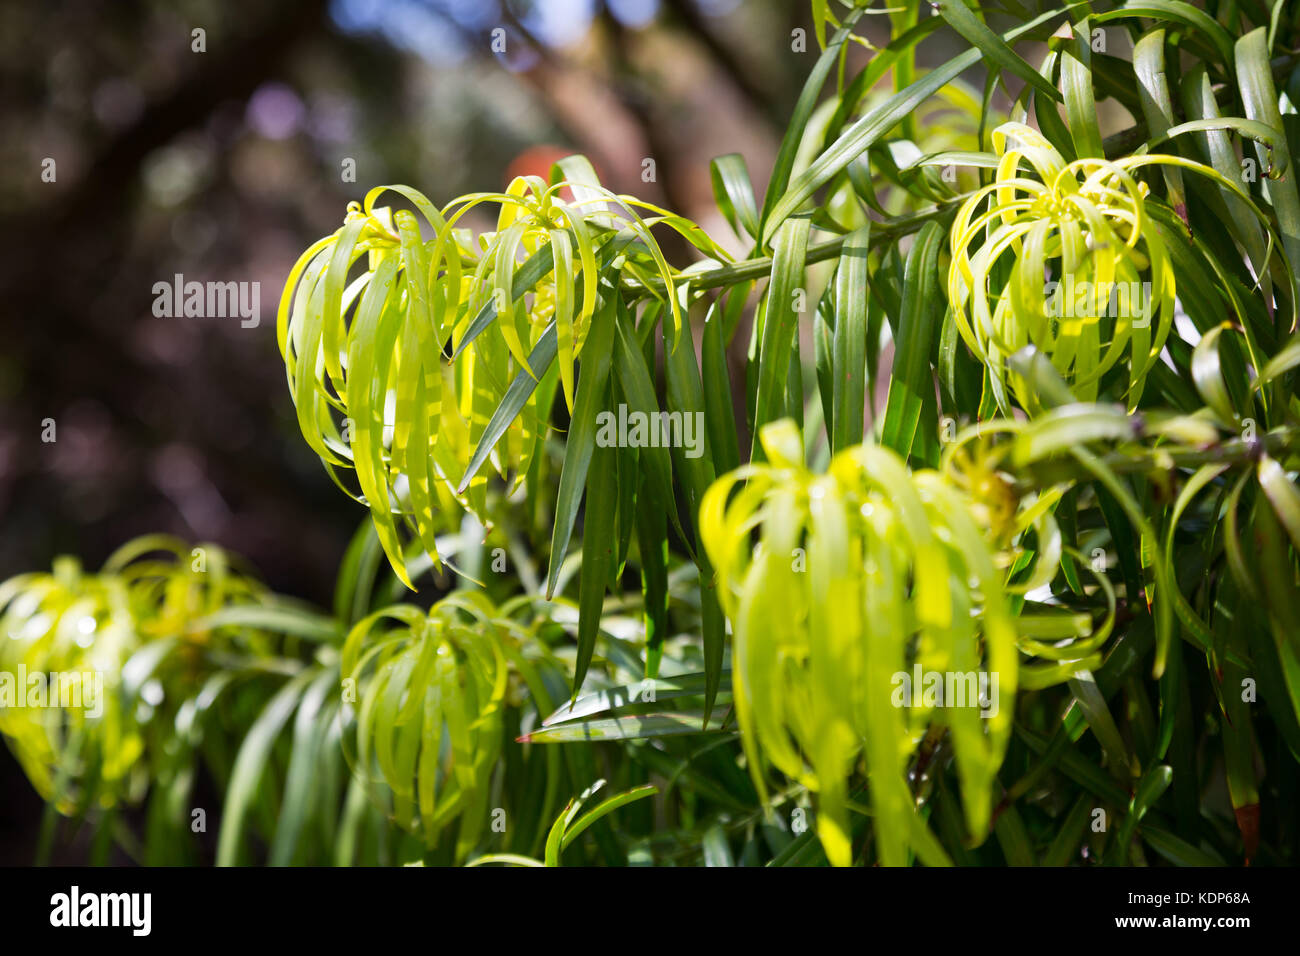 Podocarpus Henkelii plant  in spring Stock Photo